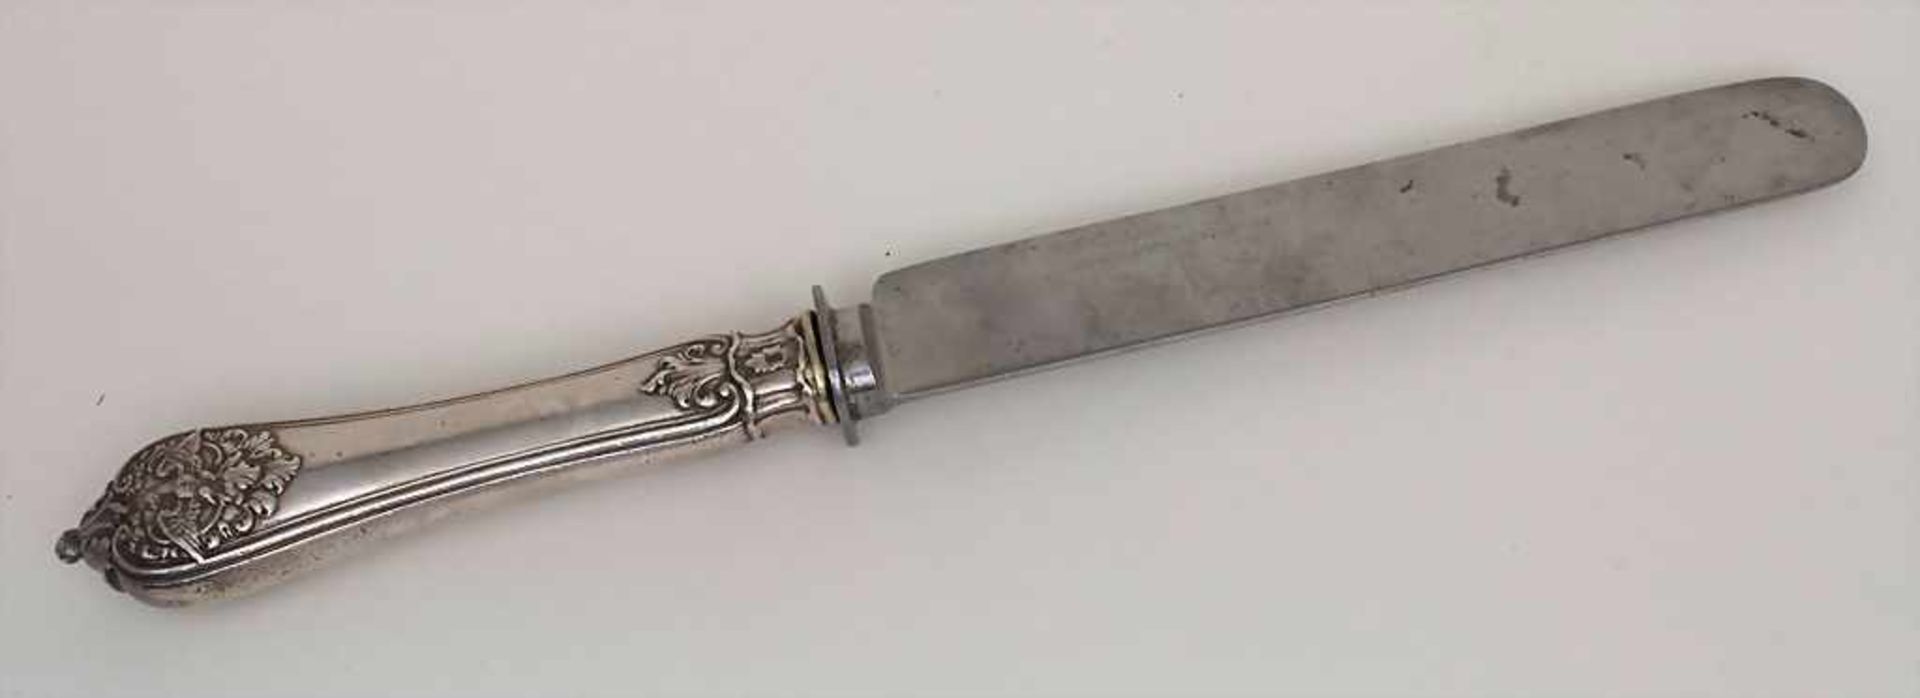 Messer mit Wilhelm Rex Initialen / A knife with Wilhelm rex initialsMaterial: Silber 875,Punzierung: